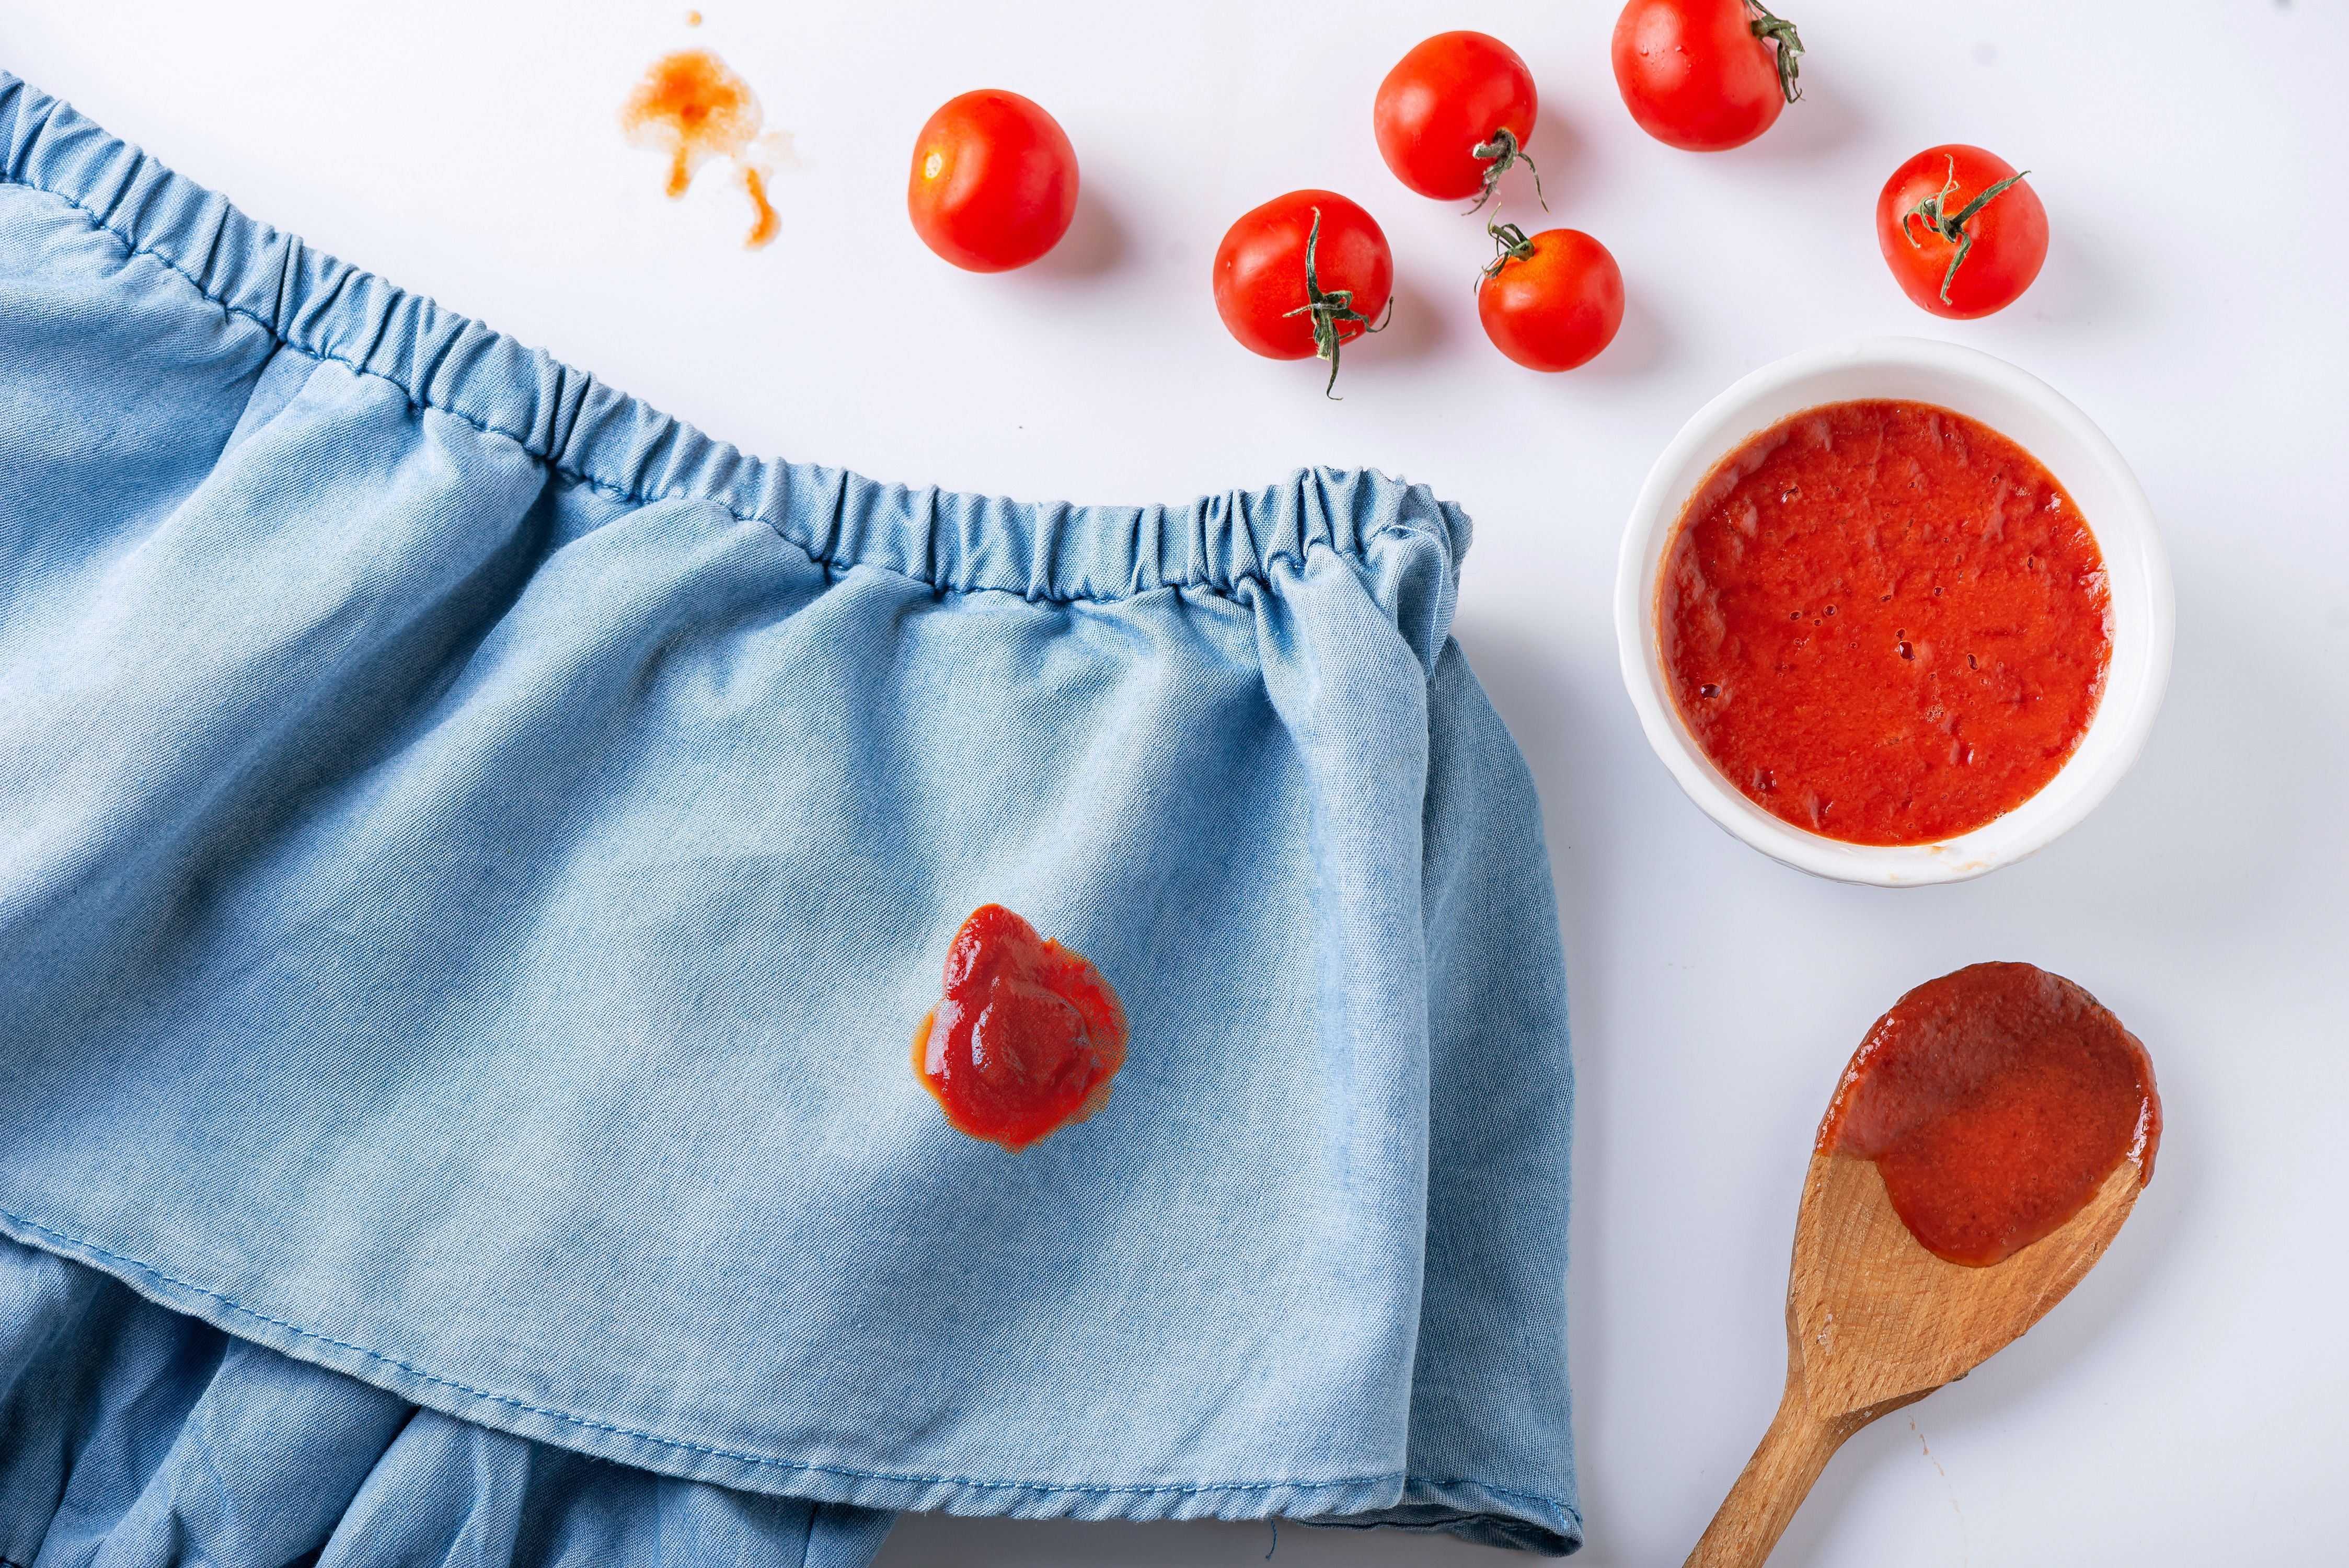 Как отстирать пятно от помидора с белой и цветной одежды